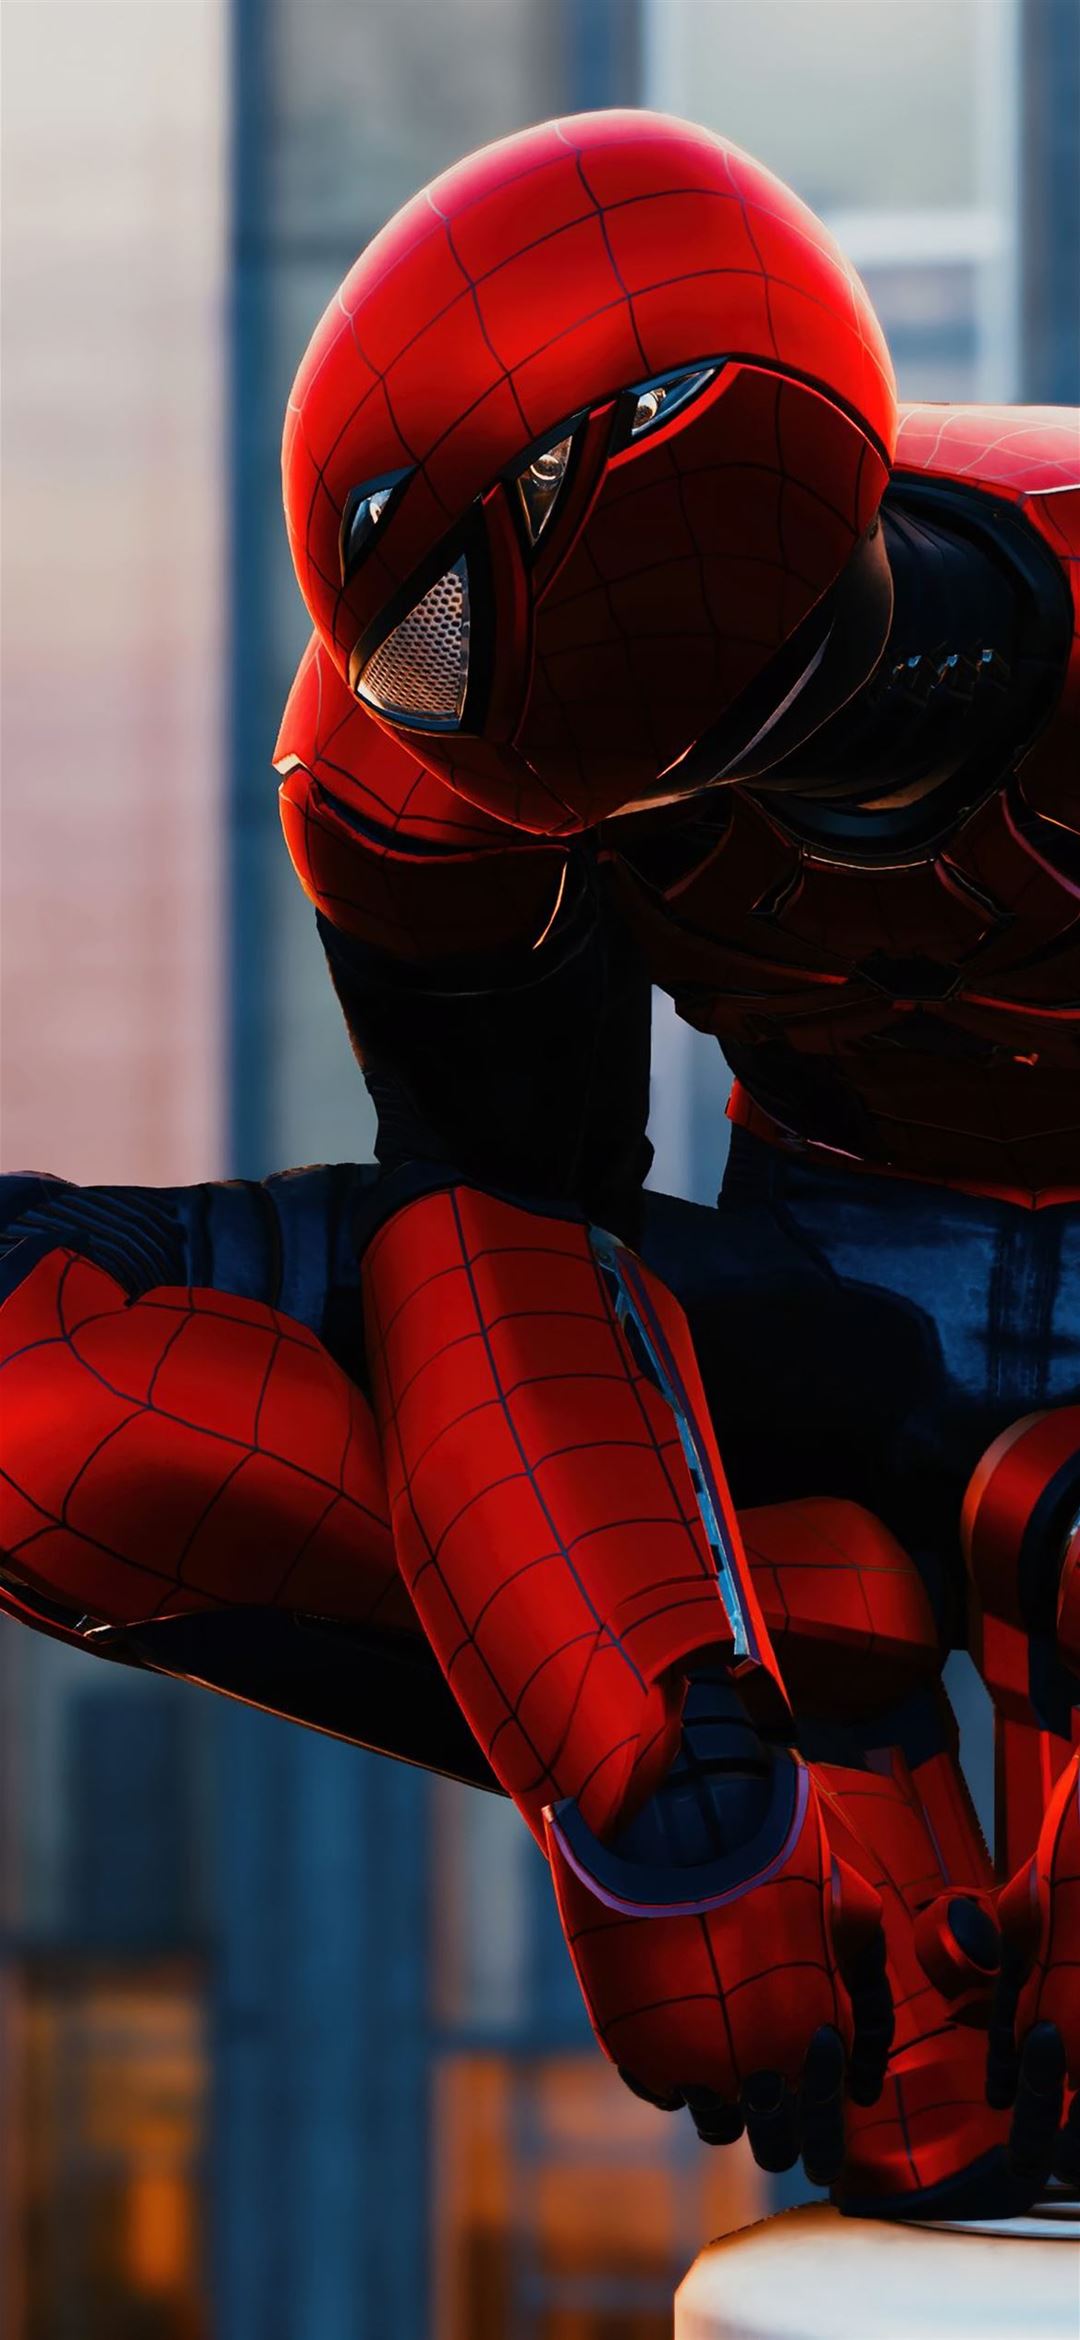 Chủ đề Spider-Man: Homecoming cho các máy Sony Xperia - Fptshop.com.vn